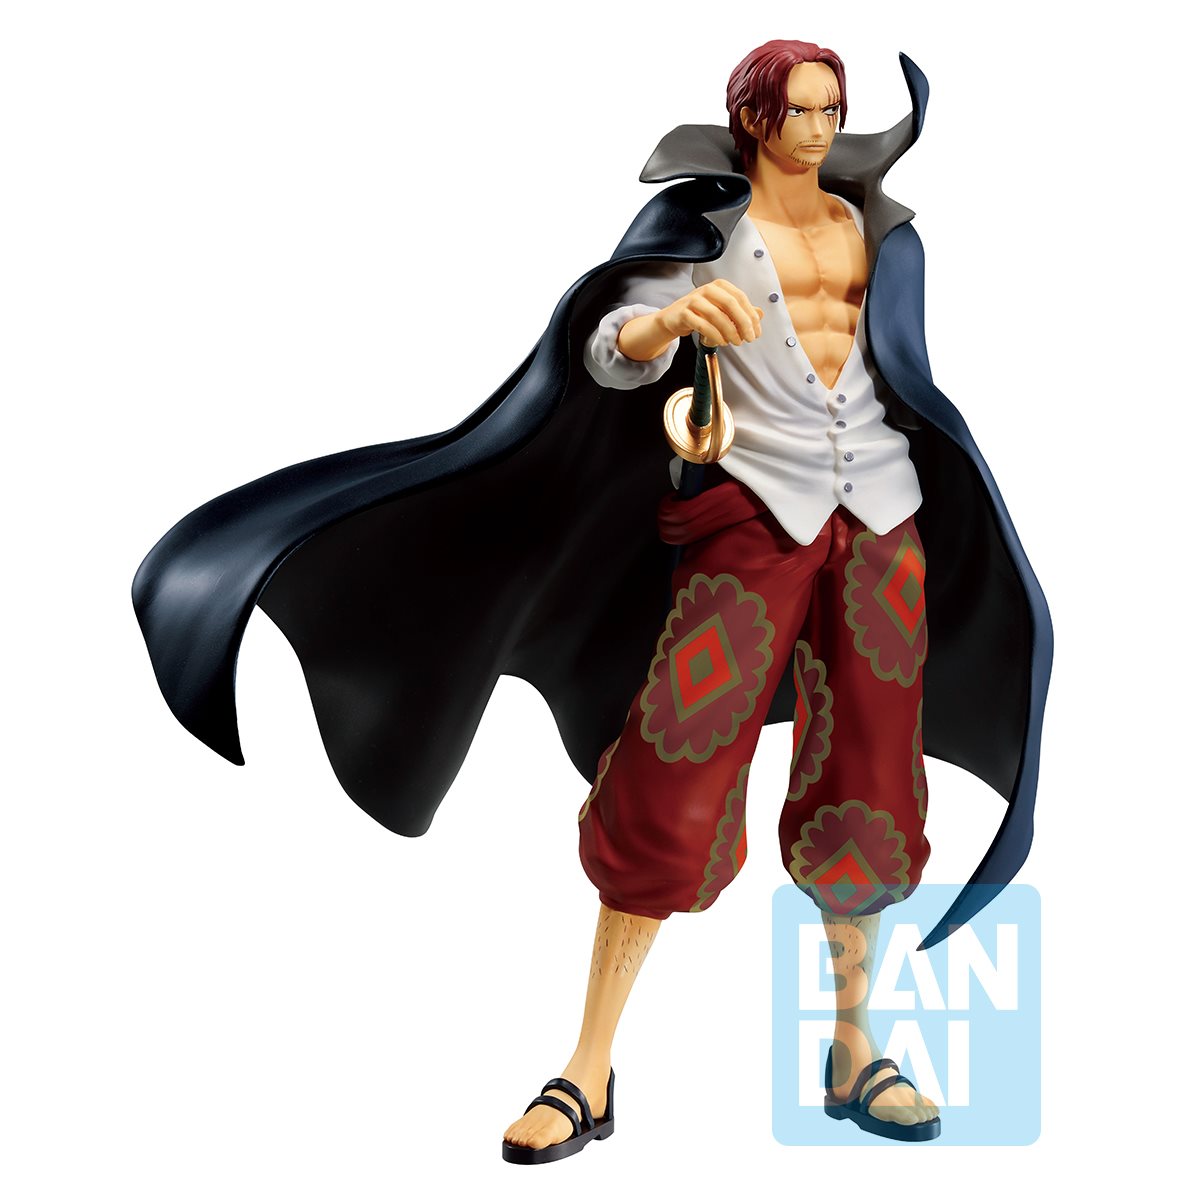 Bạn yêu thích nhân vật Red Shanks trong One Piece và muốn sở hữu một chiếc tượng độc đáo của anh ấy? Hãy cùng tham quan bộ sưu tập One Piece Red Shanks Statue và chiêm ngưỡng ngay chiếc tượng Red Shanks Ichiban đầy ấn tượng. 